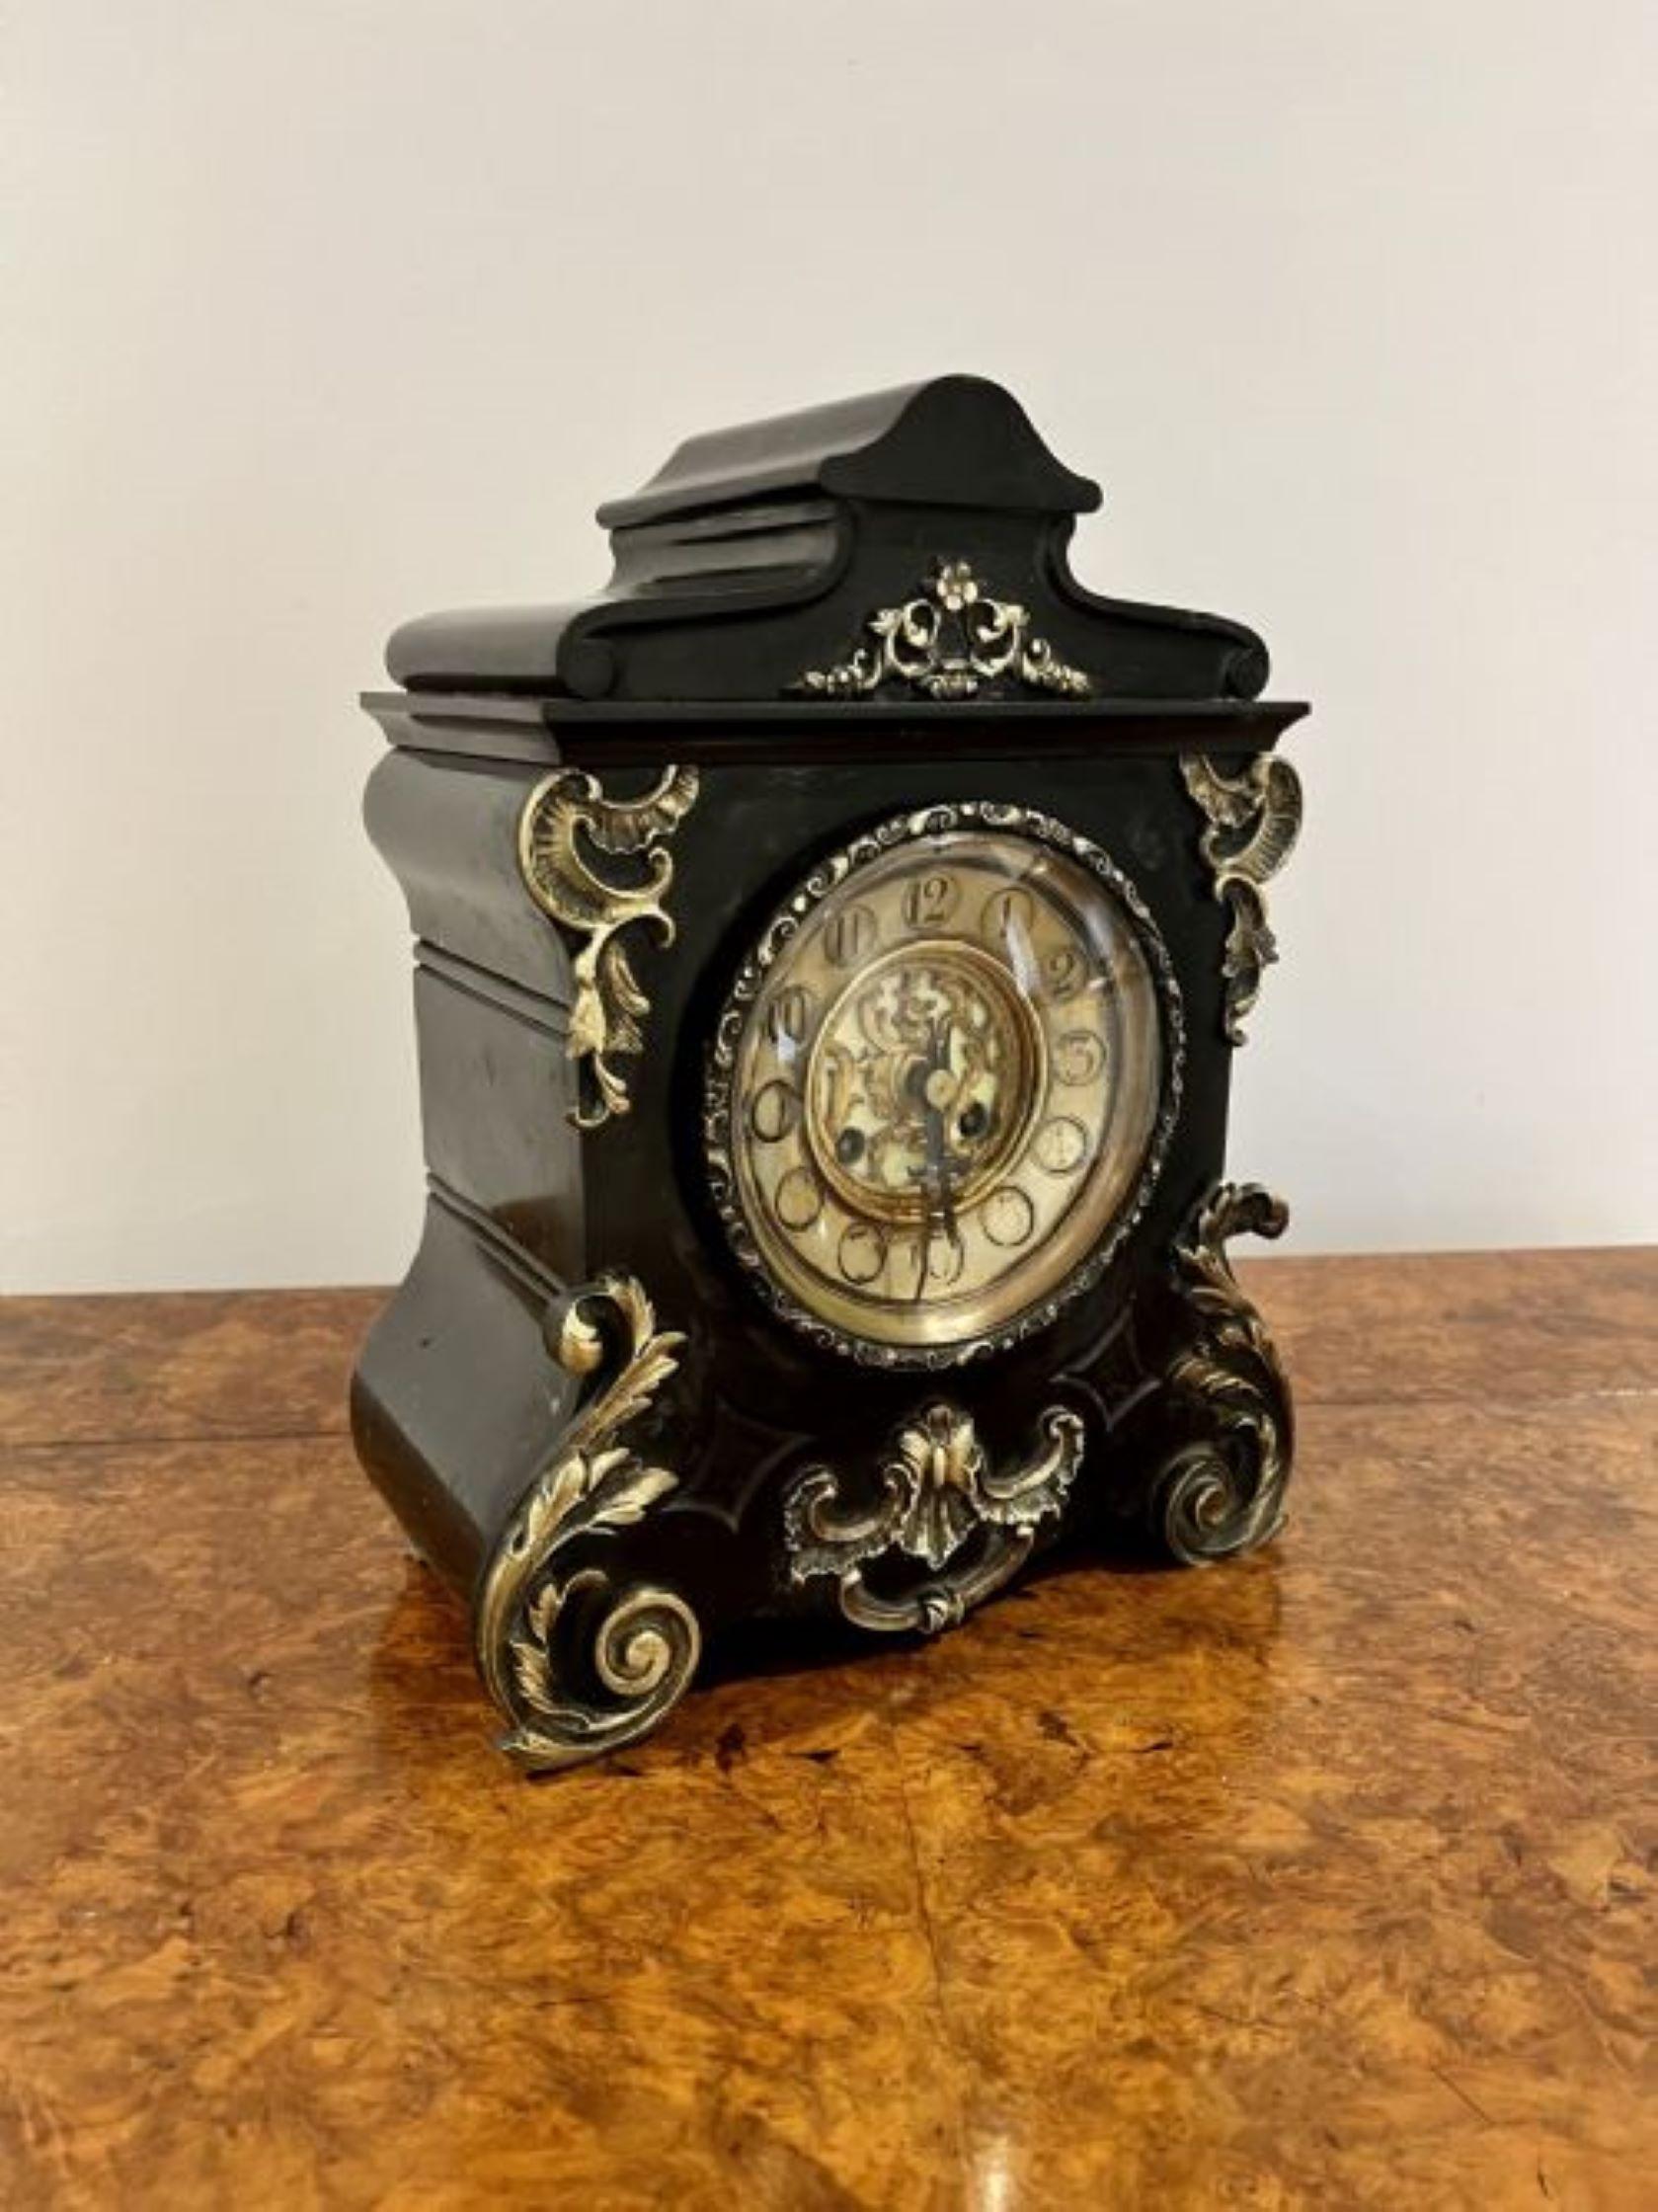 Antike viktorianische Qualität Marmor acht Tage Mantel Uhr mit einer Qualität schwarzem Marmor Mantel Uhr mit verzierten vergoldeten Messing-Halterungen, kreisförmige verzierten Messing-Zifferblatt mit den ursprünglichen Händen, acht Tage